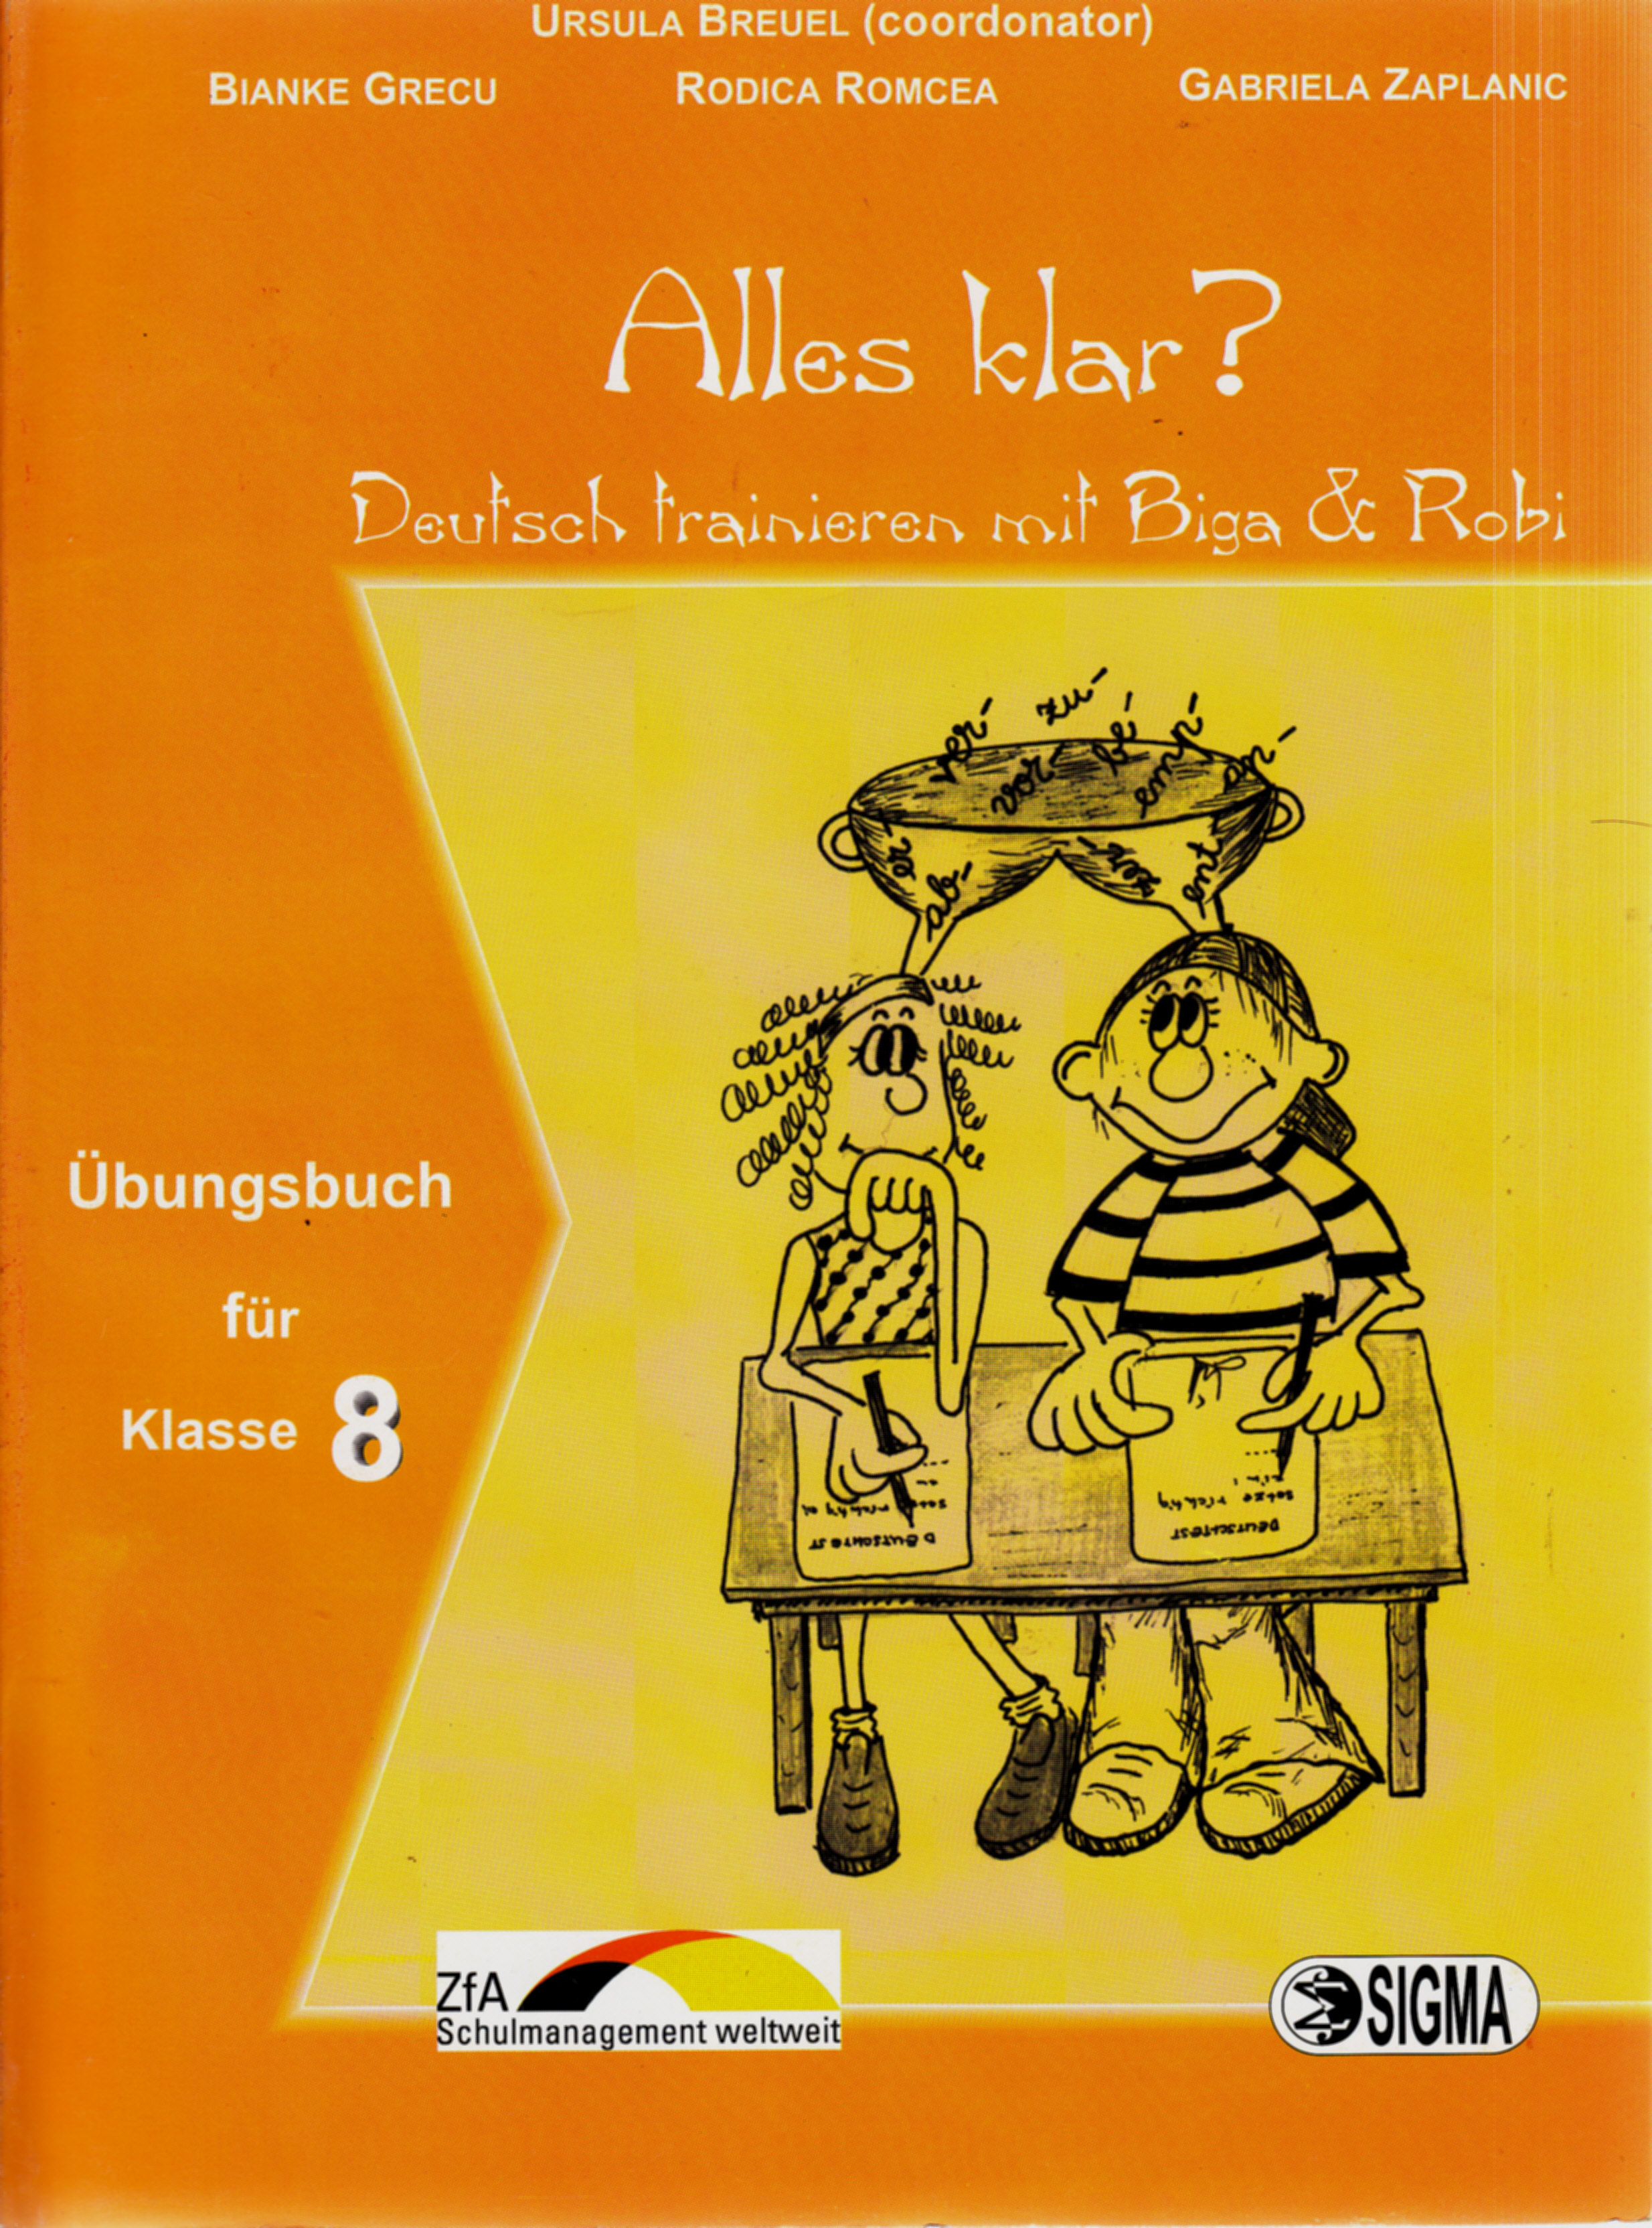 Alles klar? Ubungsbuch - Clasa 8 - Ursula Breuel